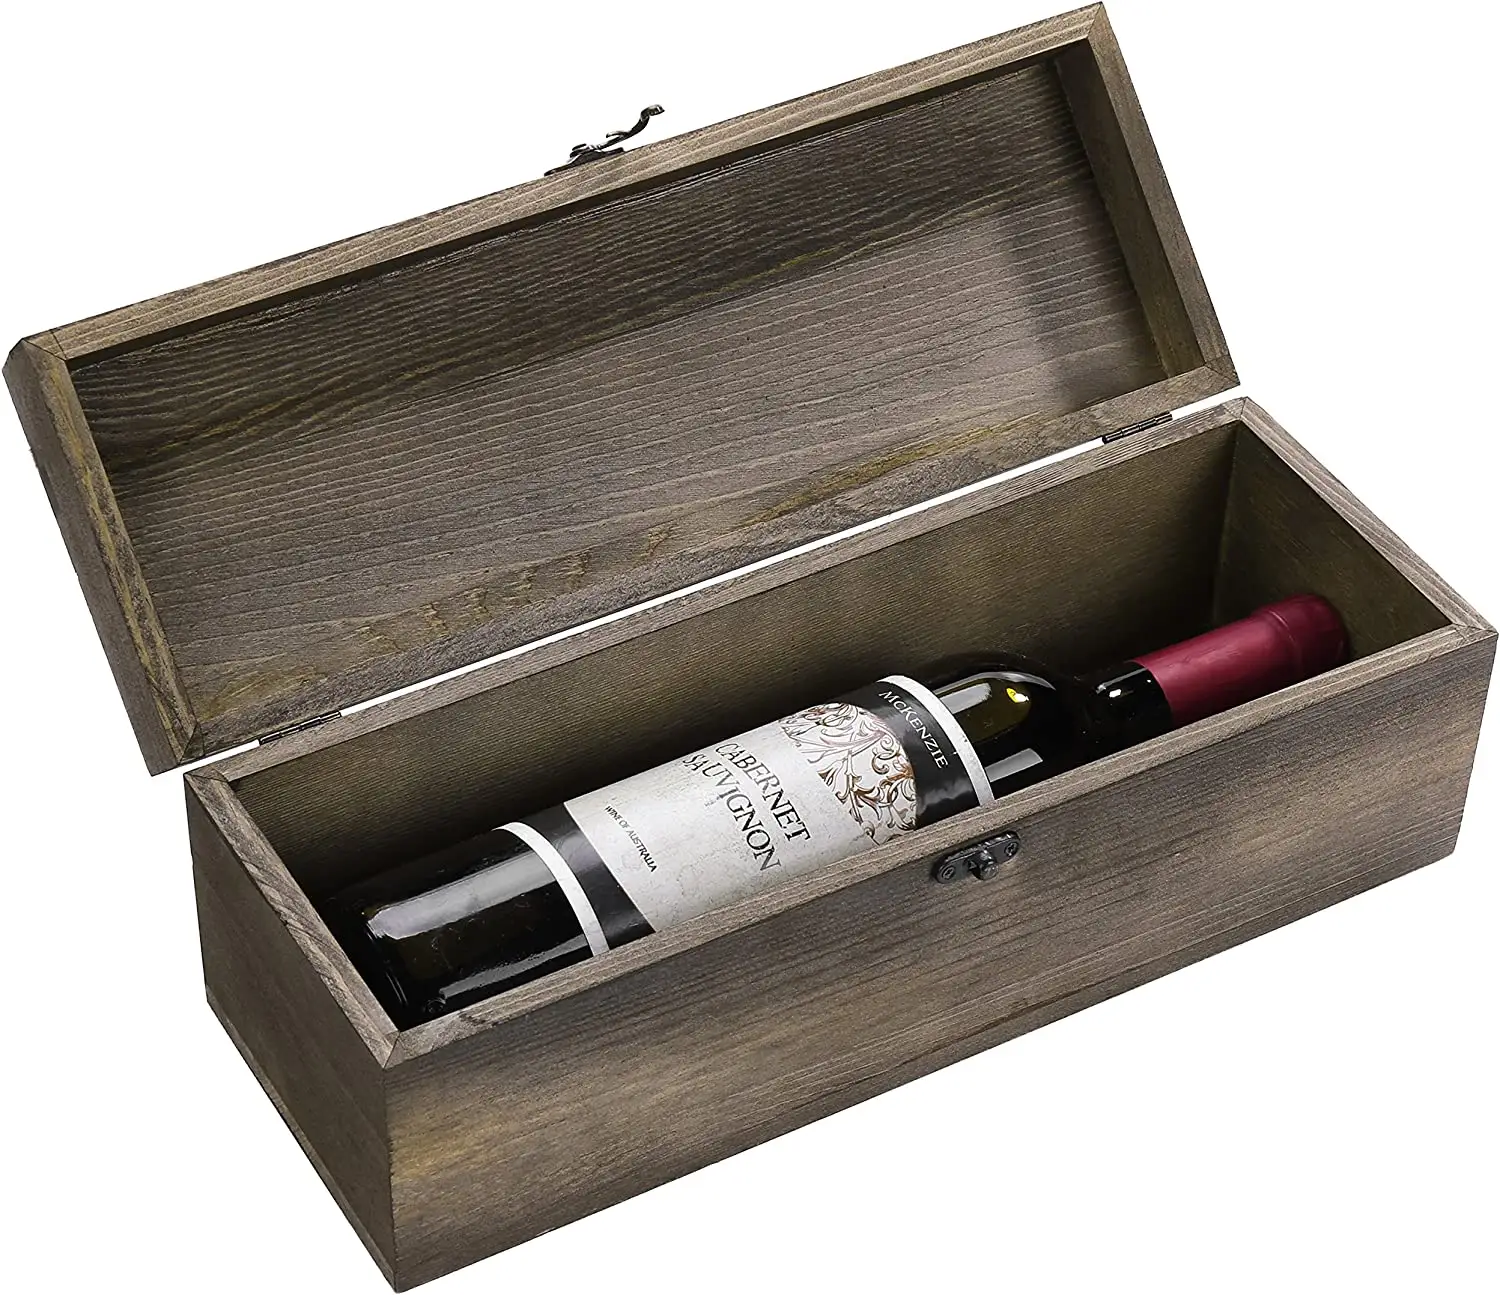 페인트 옻칠 우드 레드 와인 병 선물 상자 걸쇠 뚜껑과 칠판 라벨이있는 단일 나무 와인 병 케이스